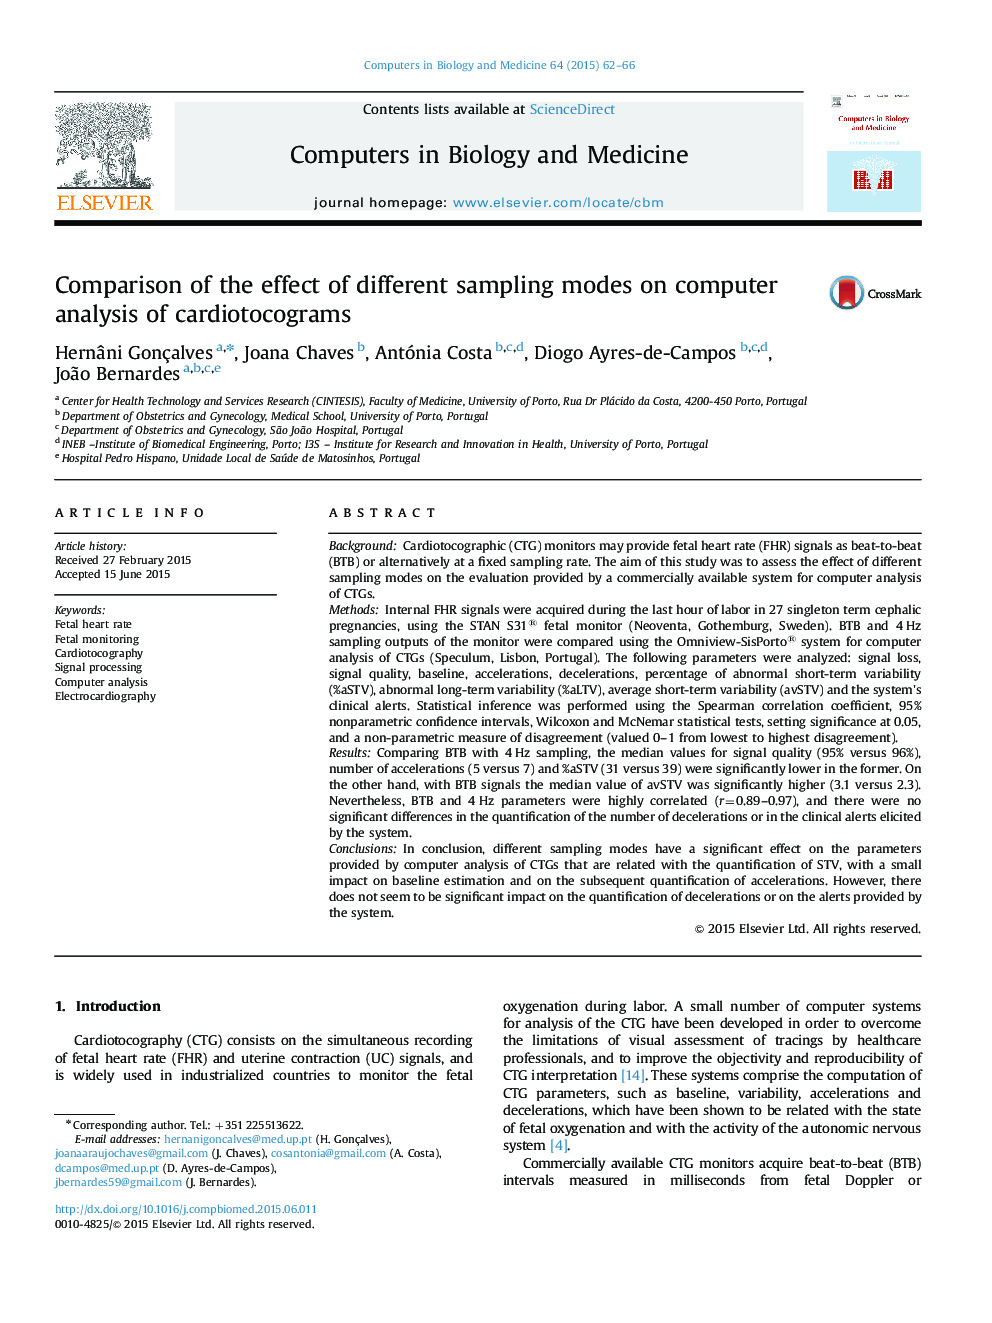 مقایسه اثر روش های مختلف نمونه گیری بر روی تجزیه و تحلیل کامپیوتری cardiotocograms